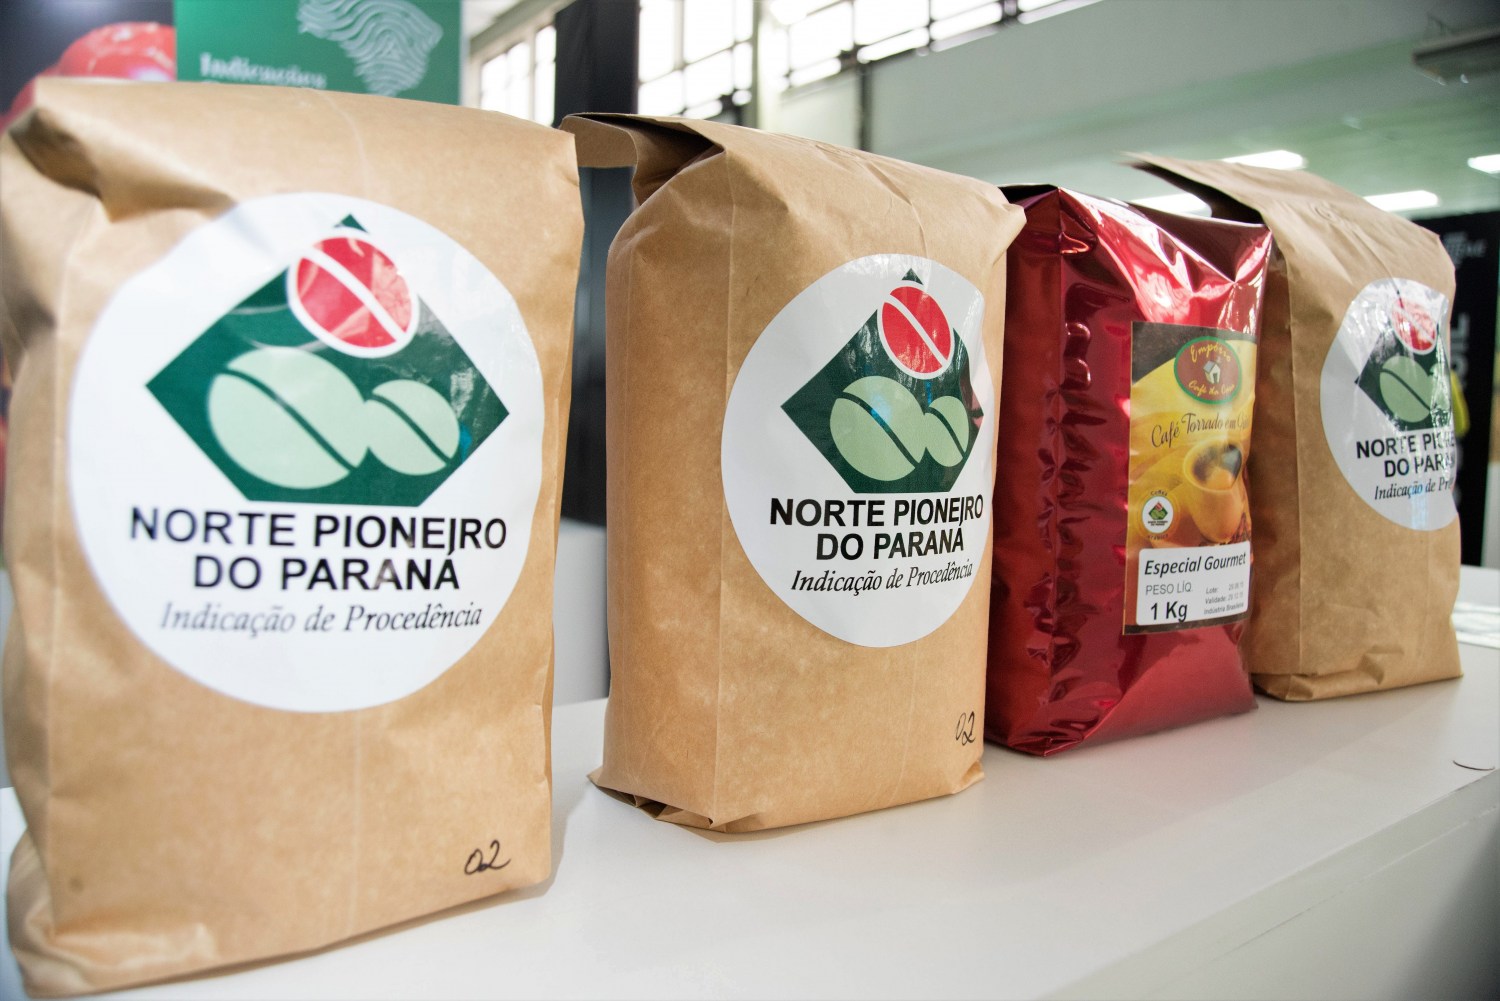 Cafés especiais com IG, como os produzidos no norte pioneiro do Paraná